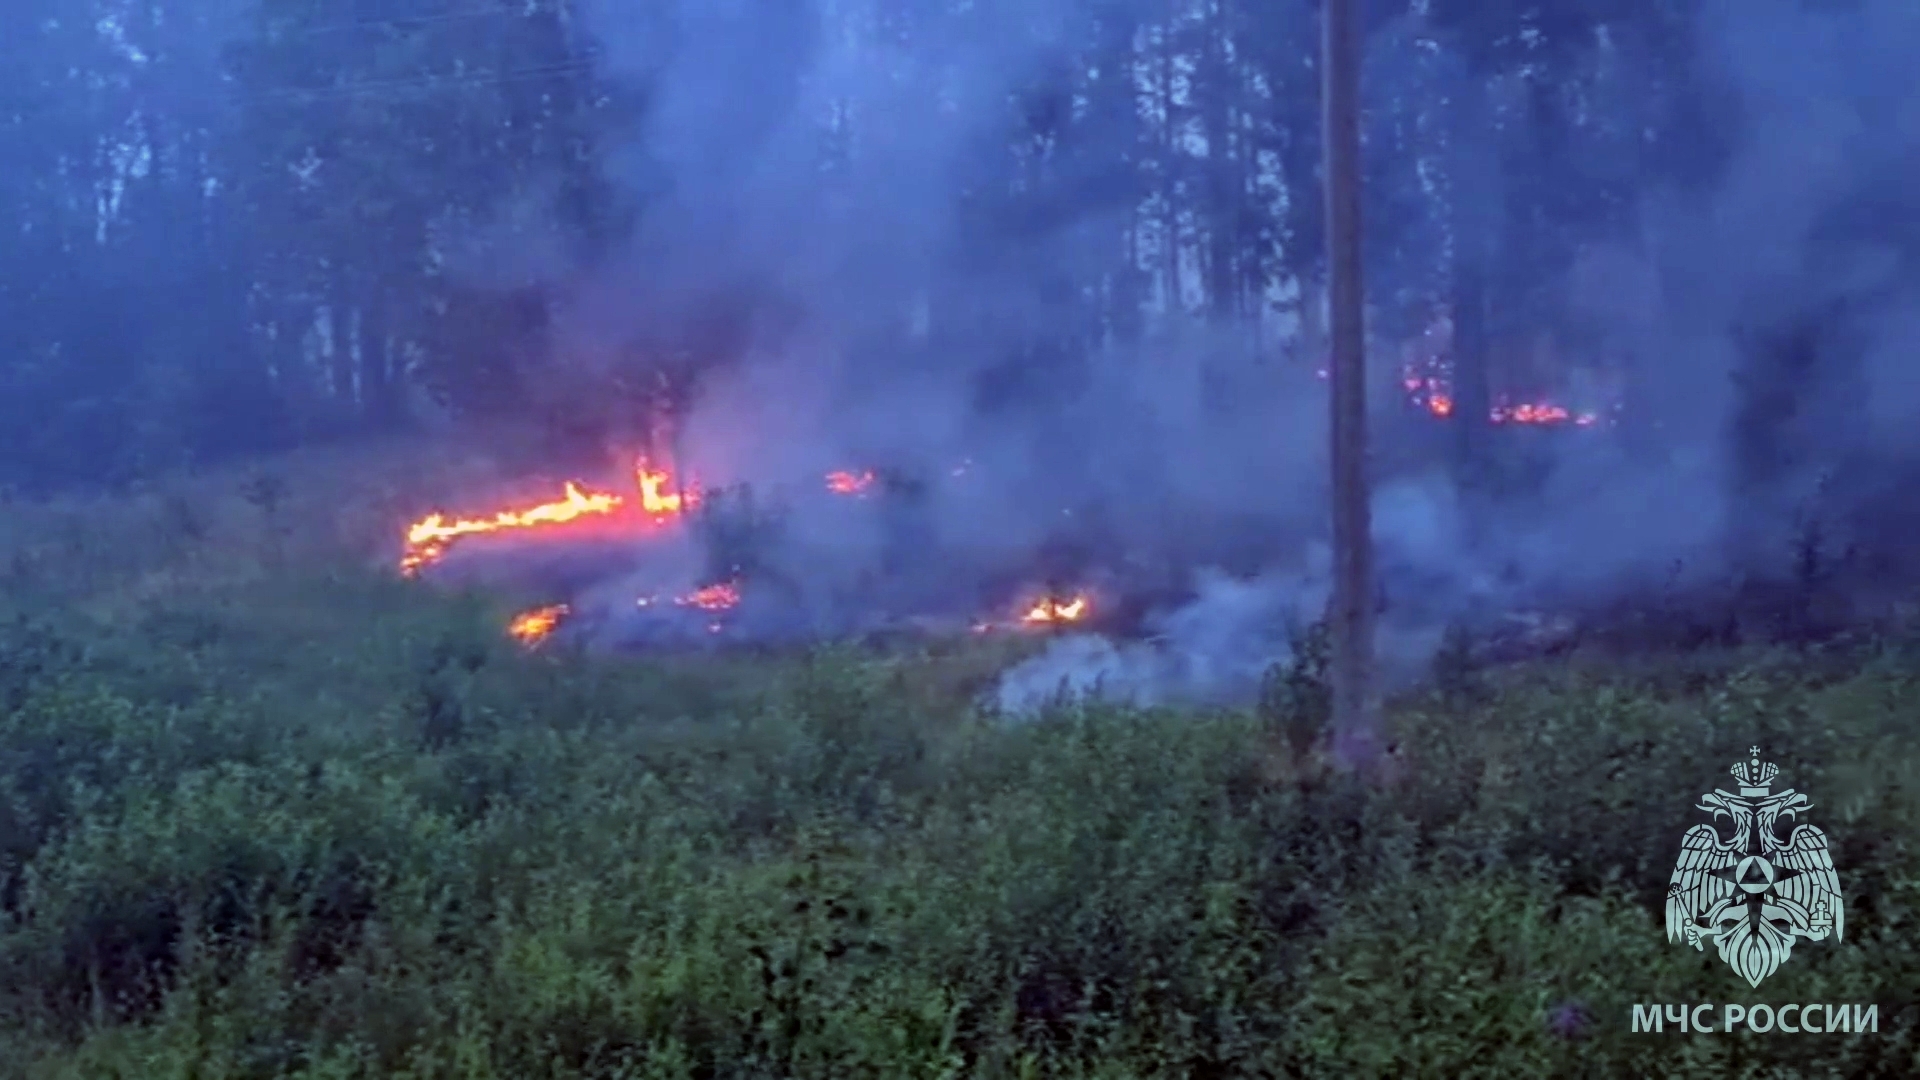 حرائق غابات في جمهورية كاريليا الروسية